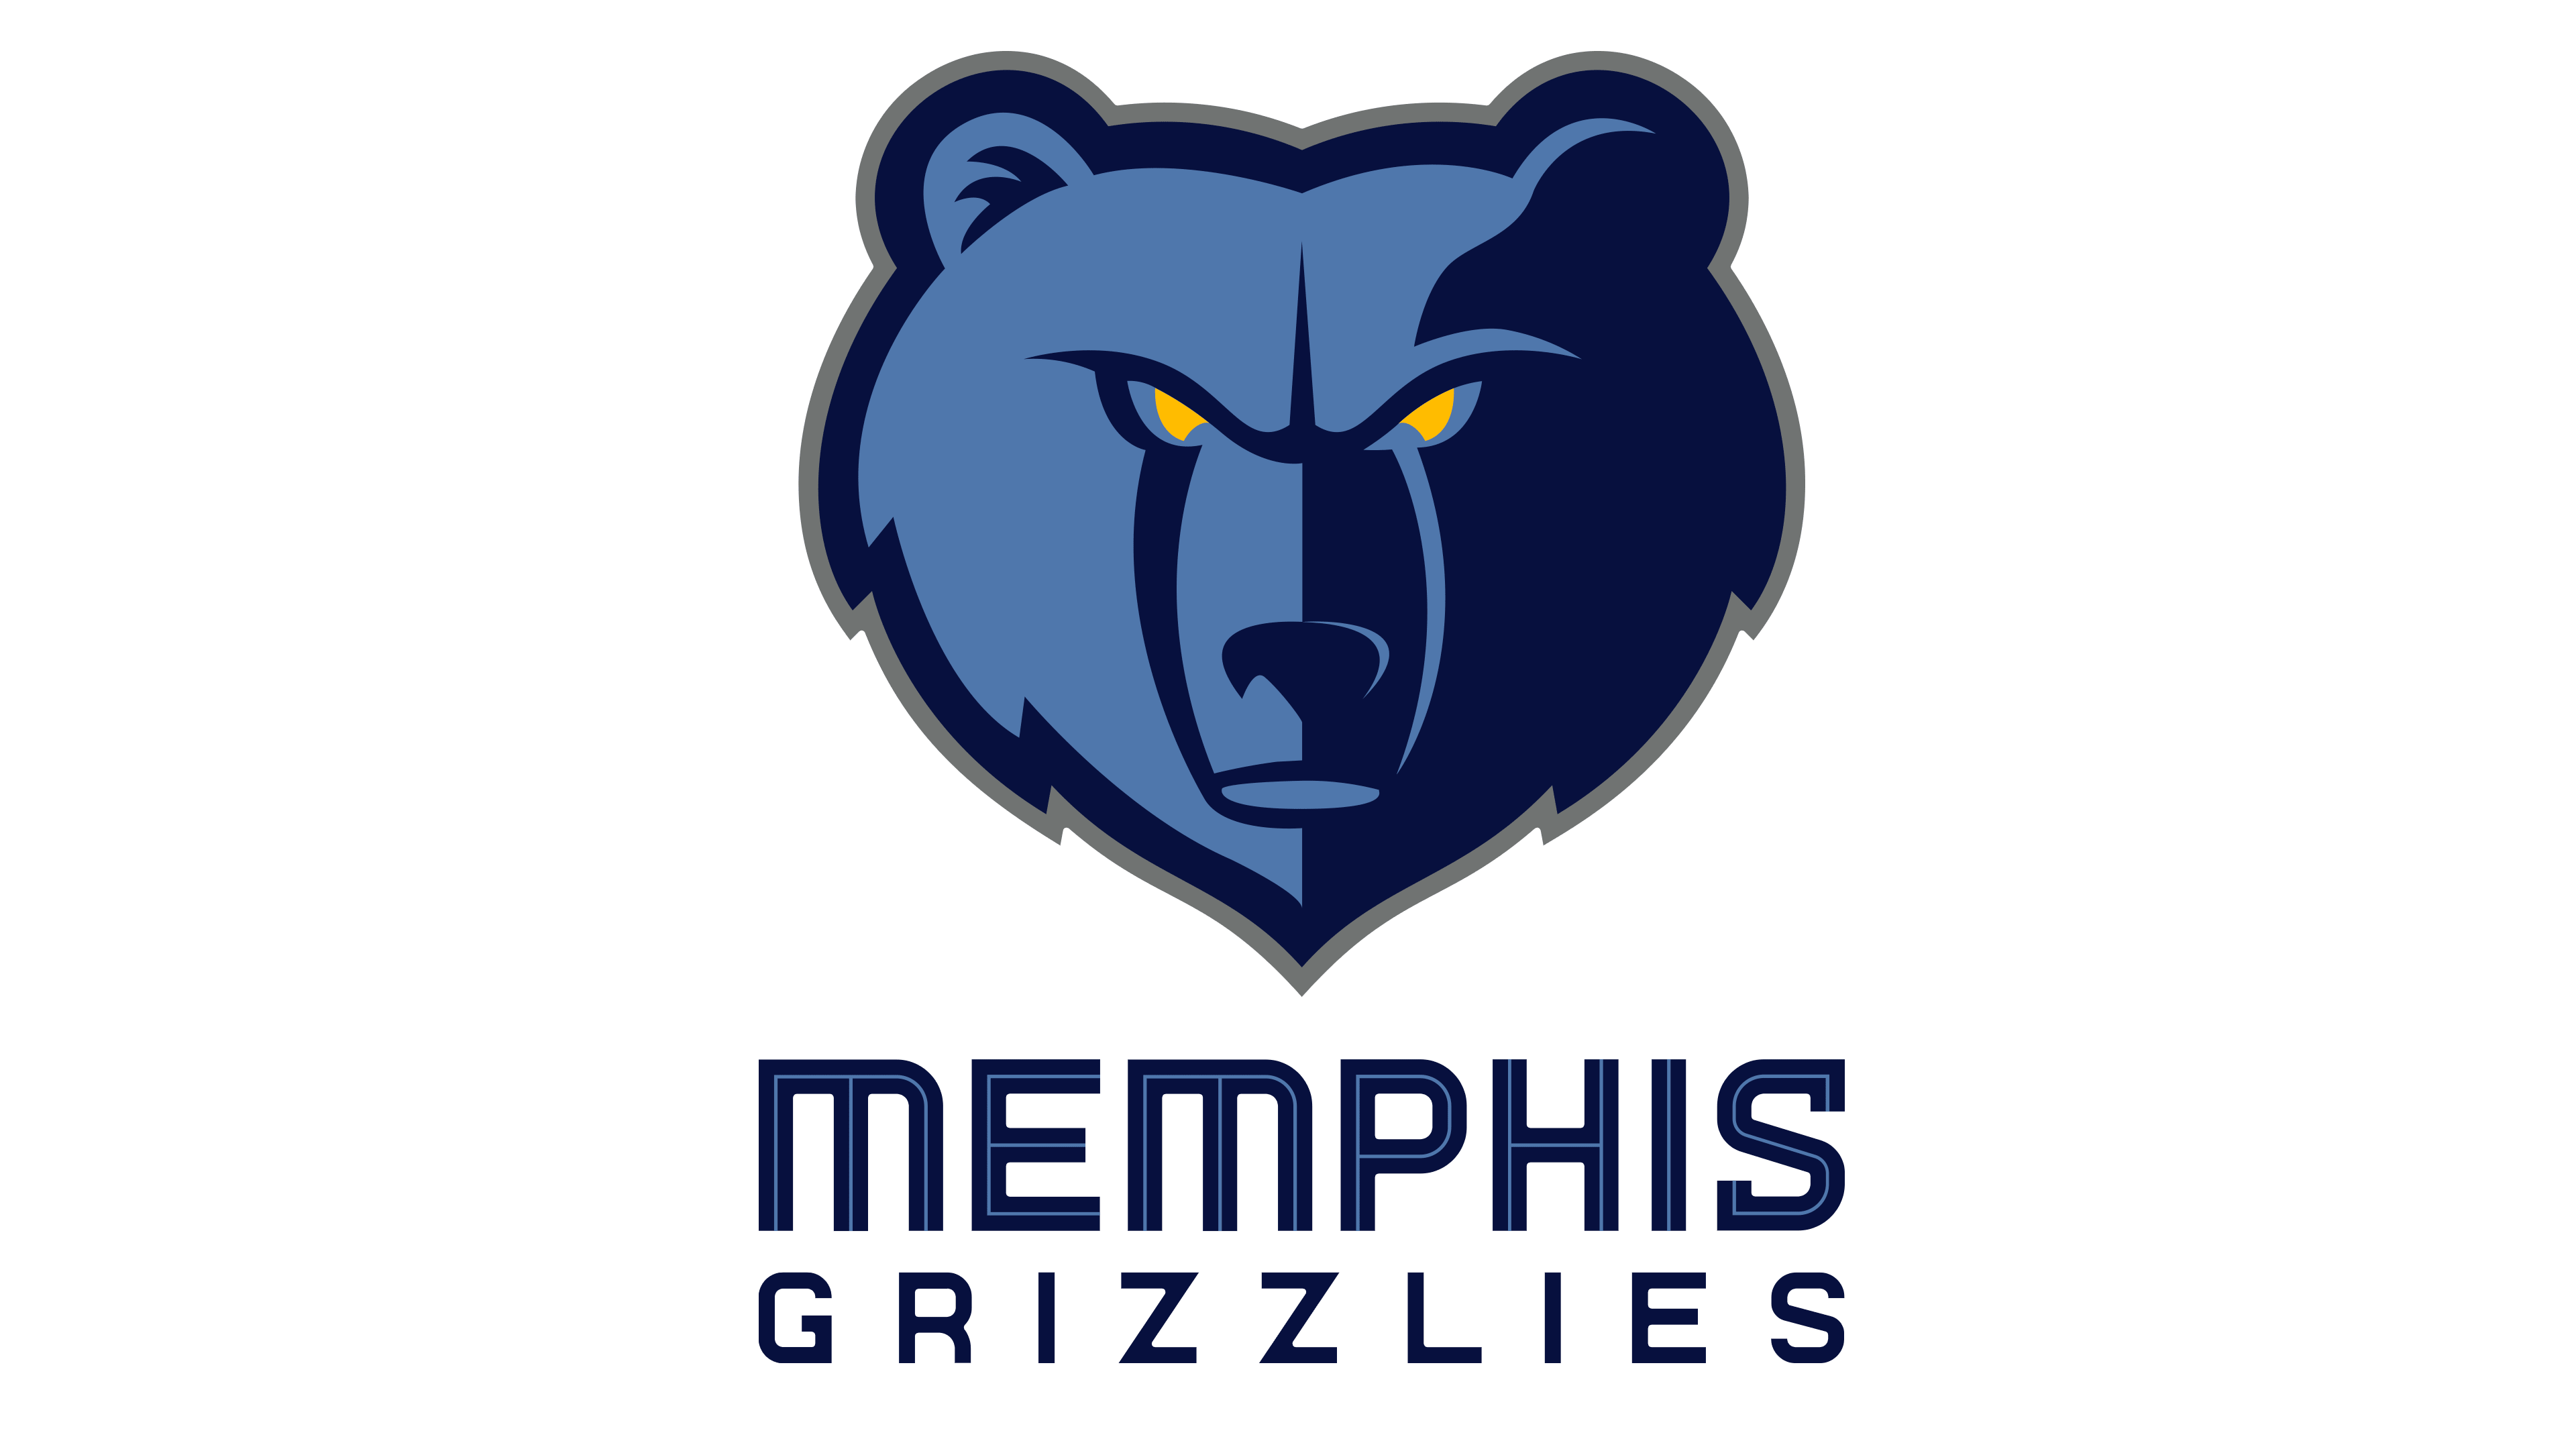 Memphis Grizzlies Logo : histoire, signification de l'emblème